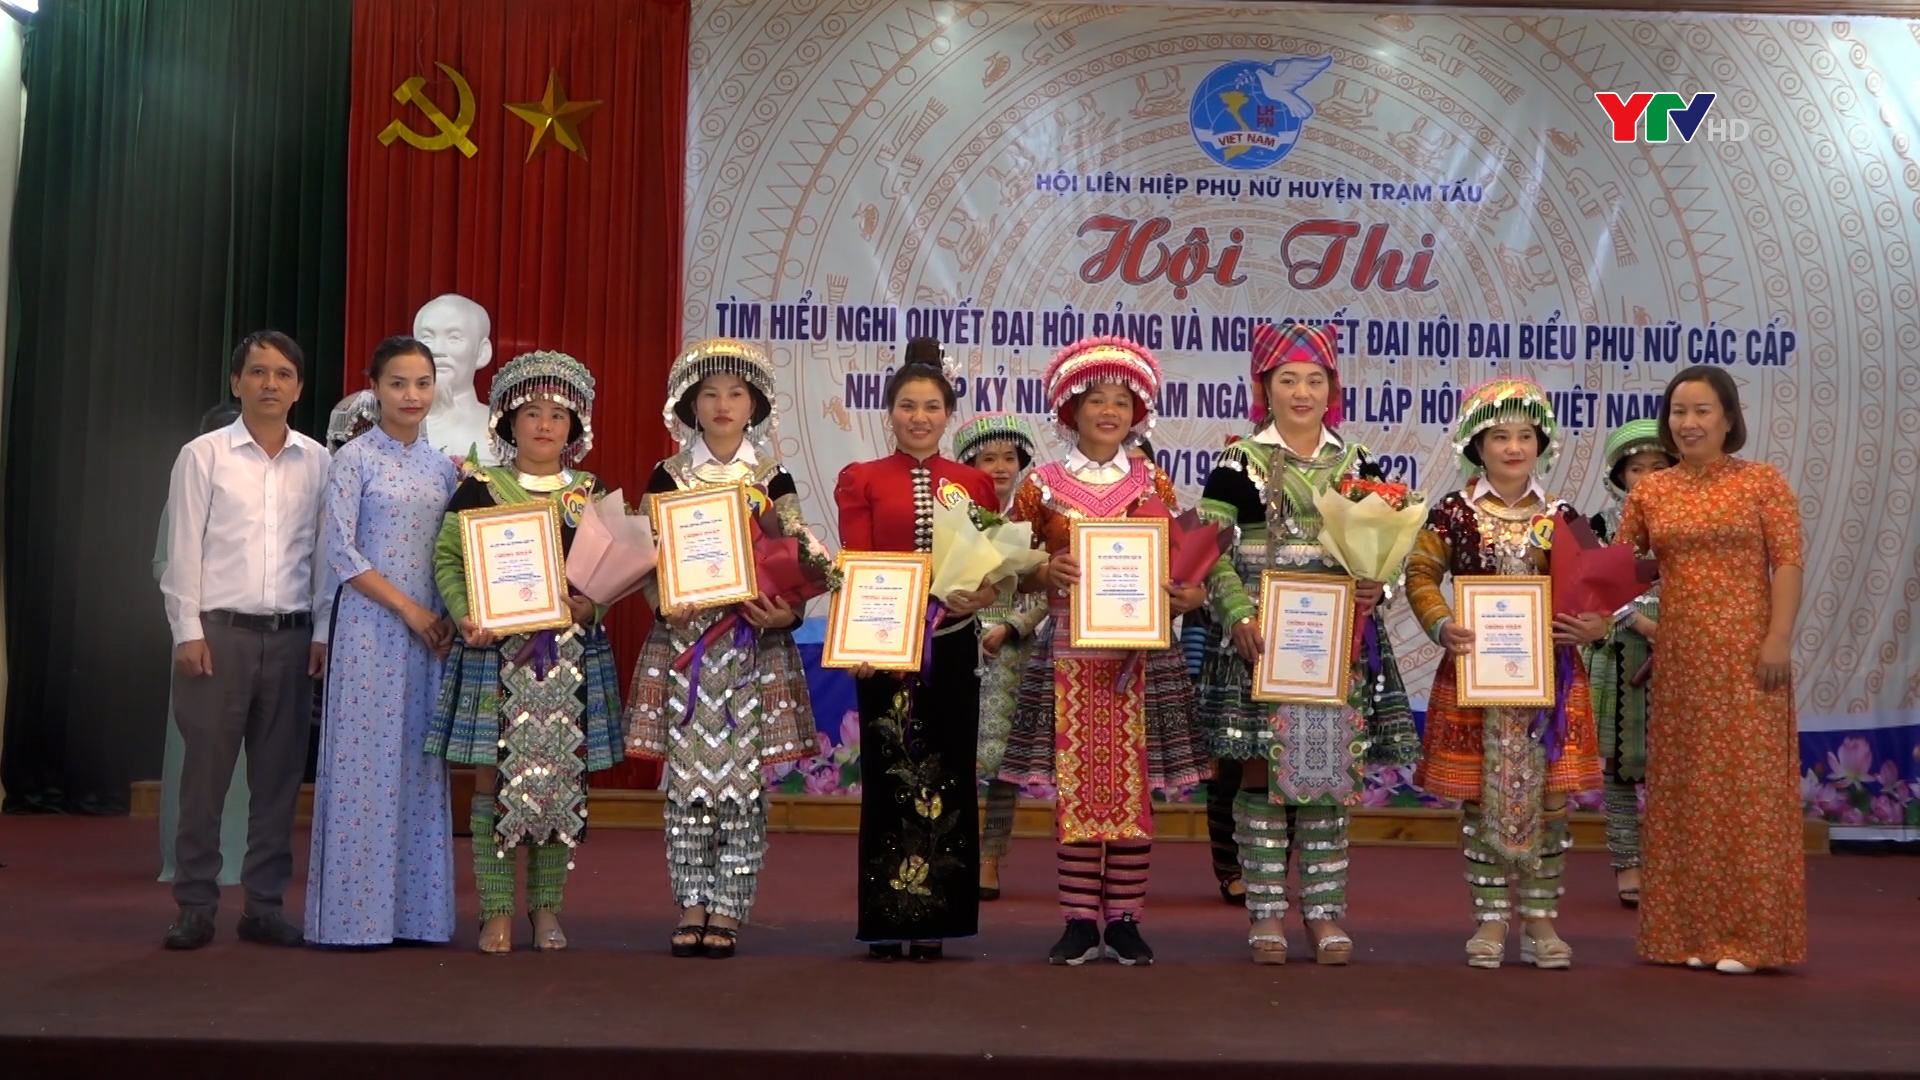 Hội LHPN huyện Trạm Tấu và huyện Văn Yên tổ chức Hội thi Tìm hiểu Nghị quyết Đại hội phụ nữ các cấp